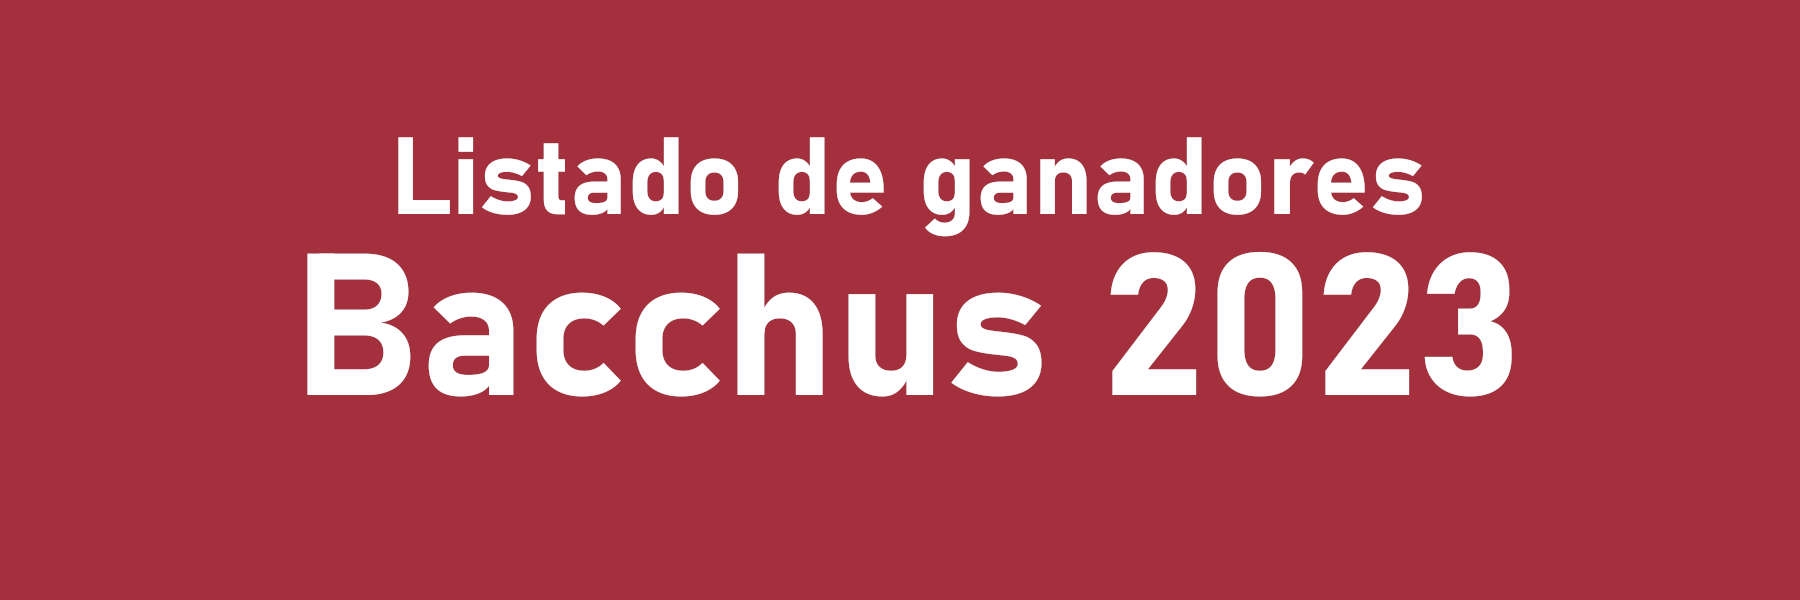 Premios Bacchus 2023: listado de ganadores y premiados